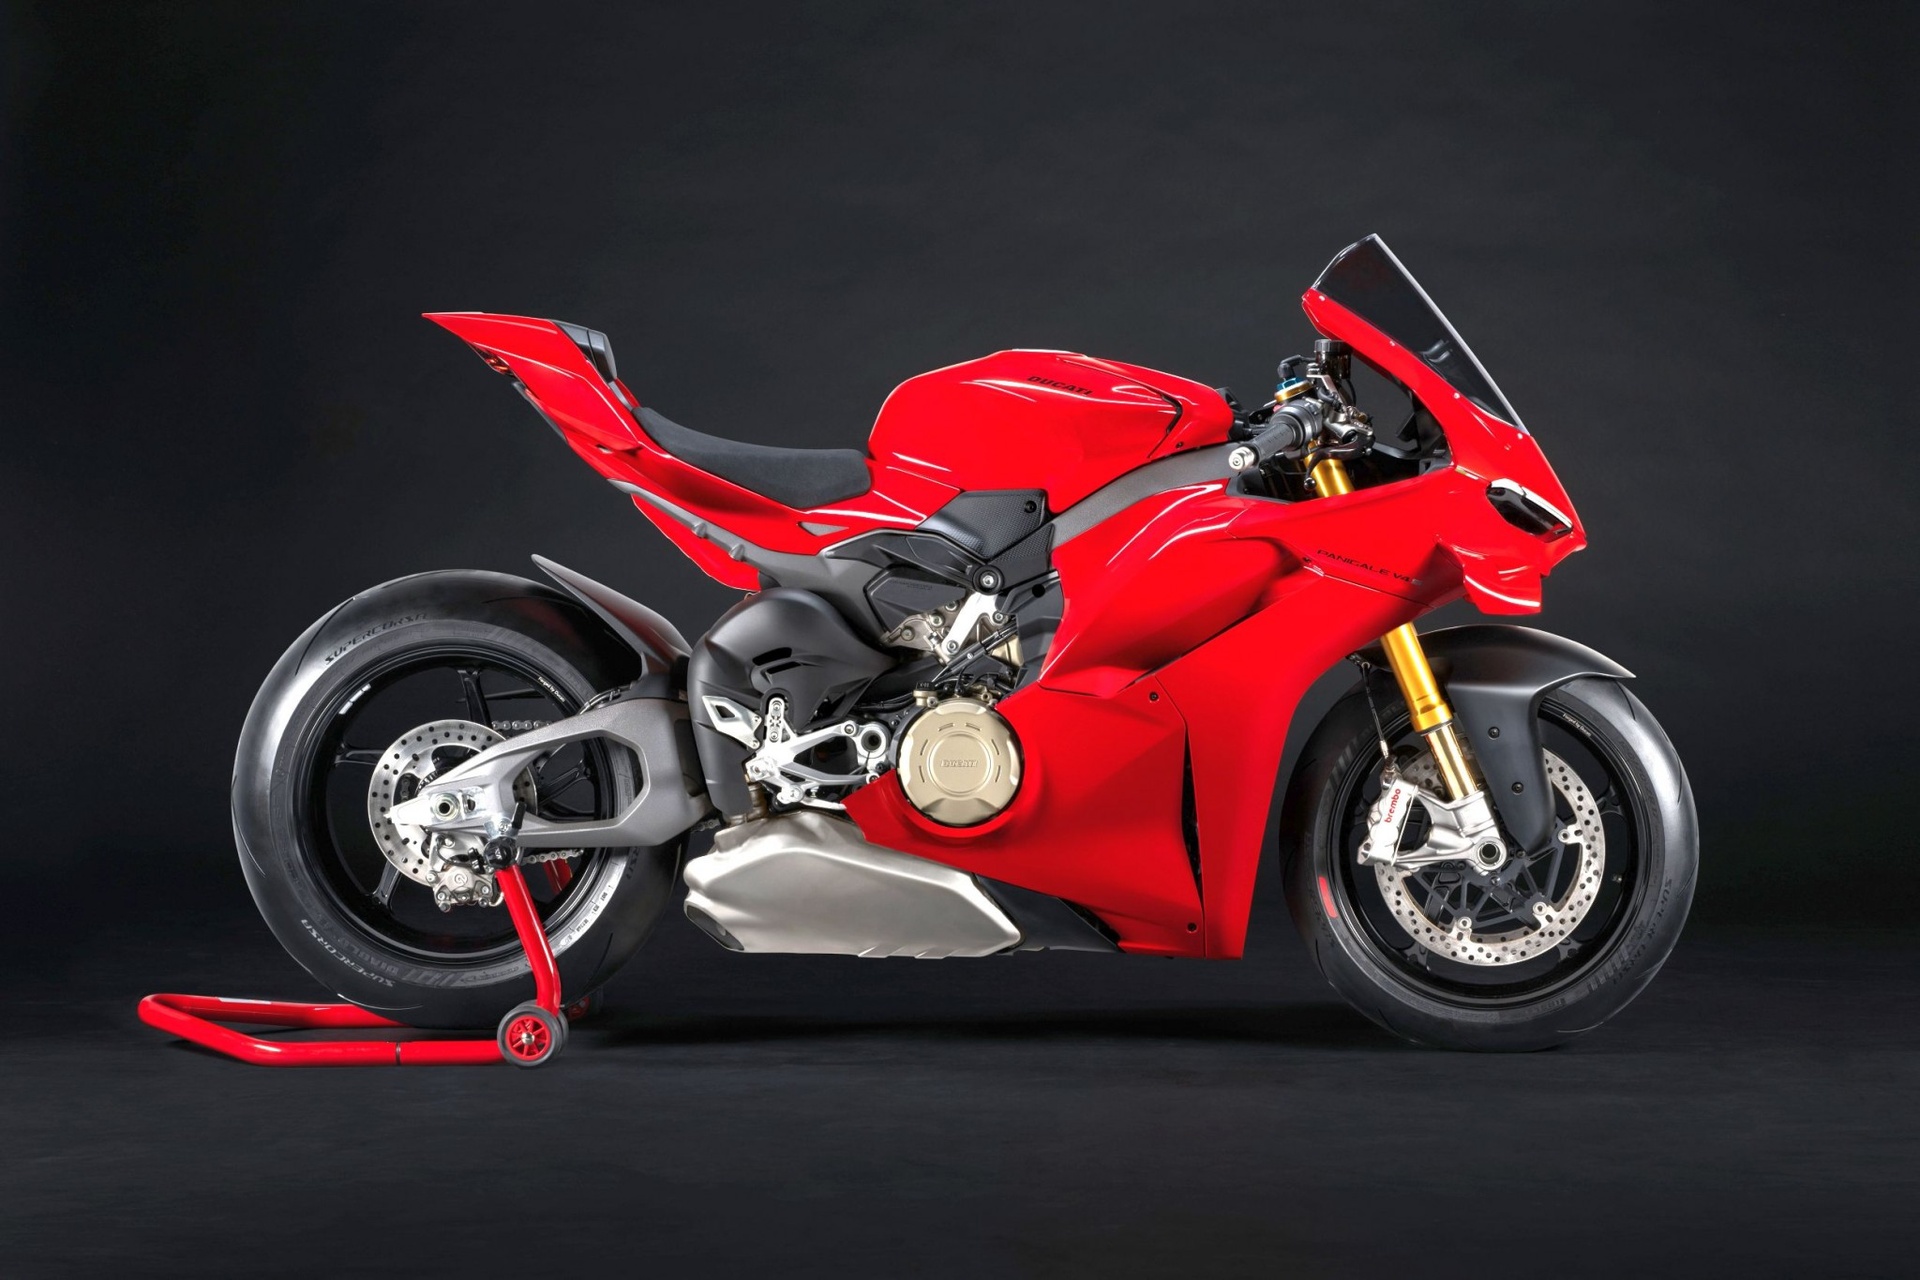 Chi tiết Ducati Panigale V4 thế hệ mới mạnh 228 mã lực